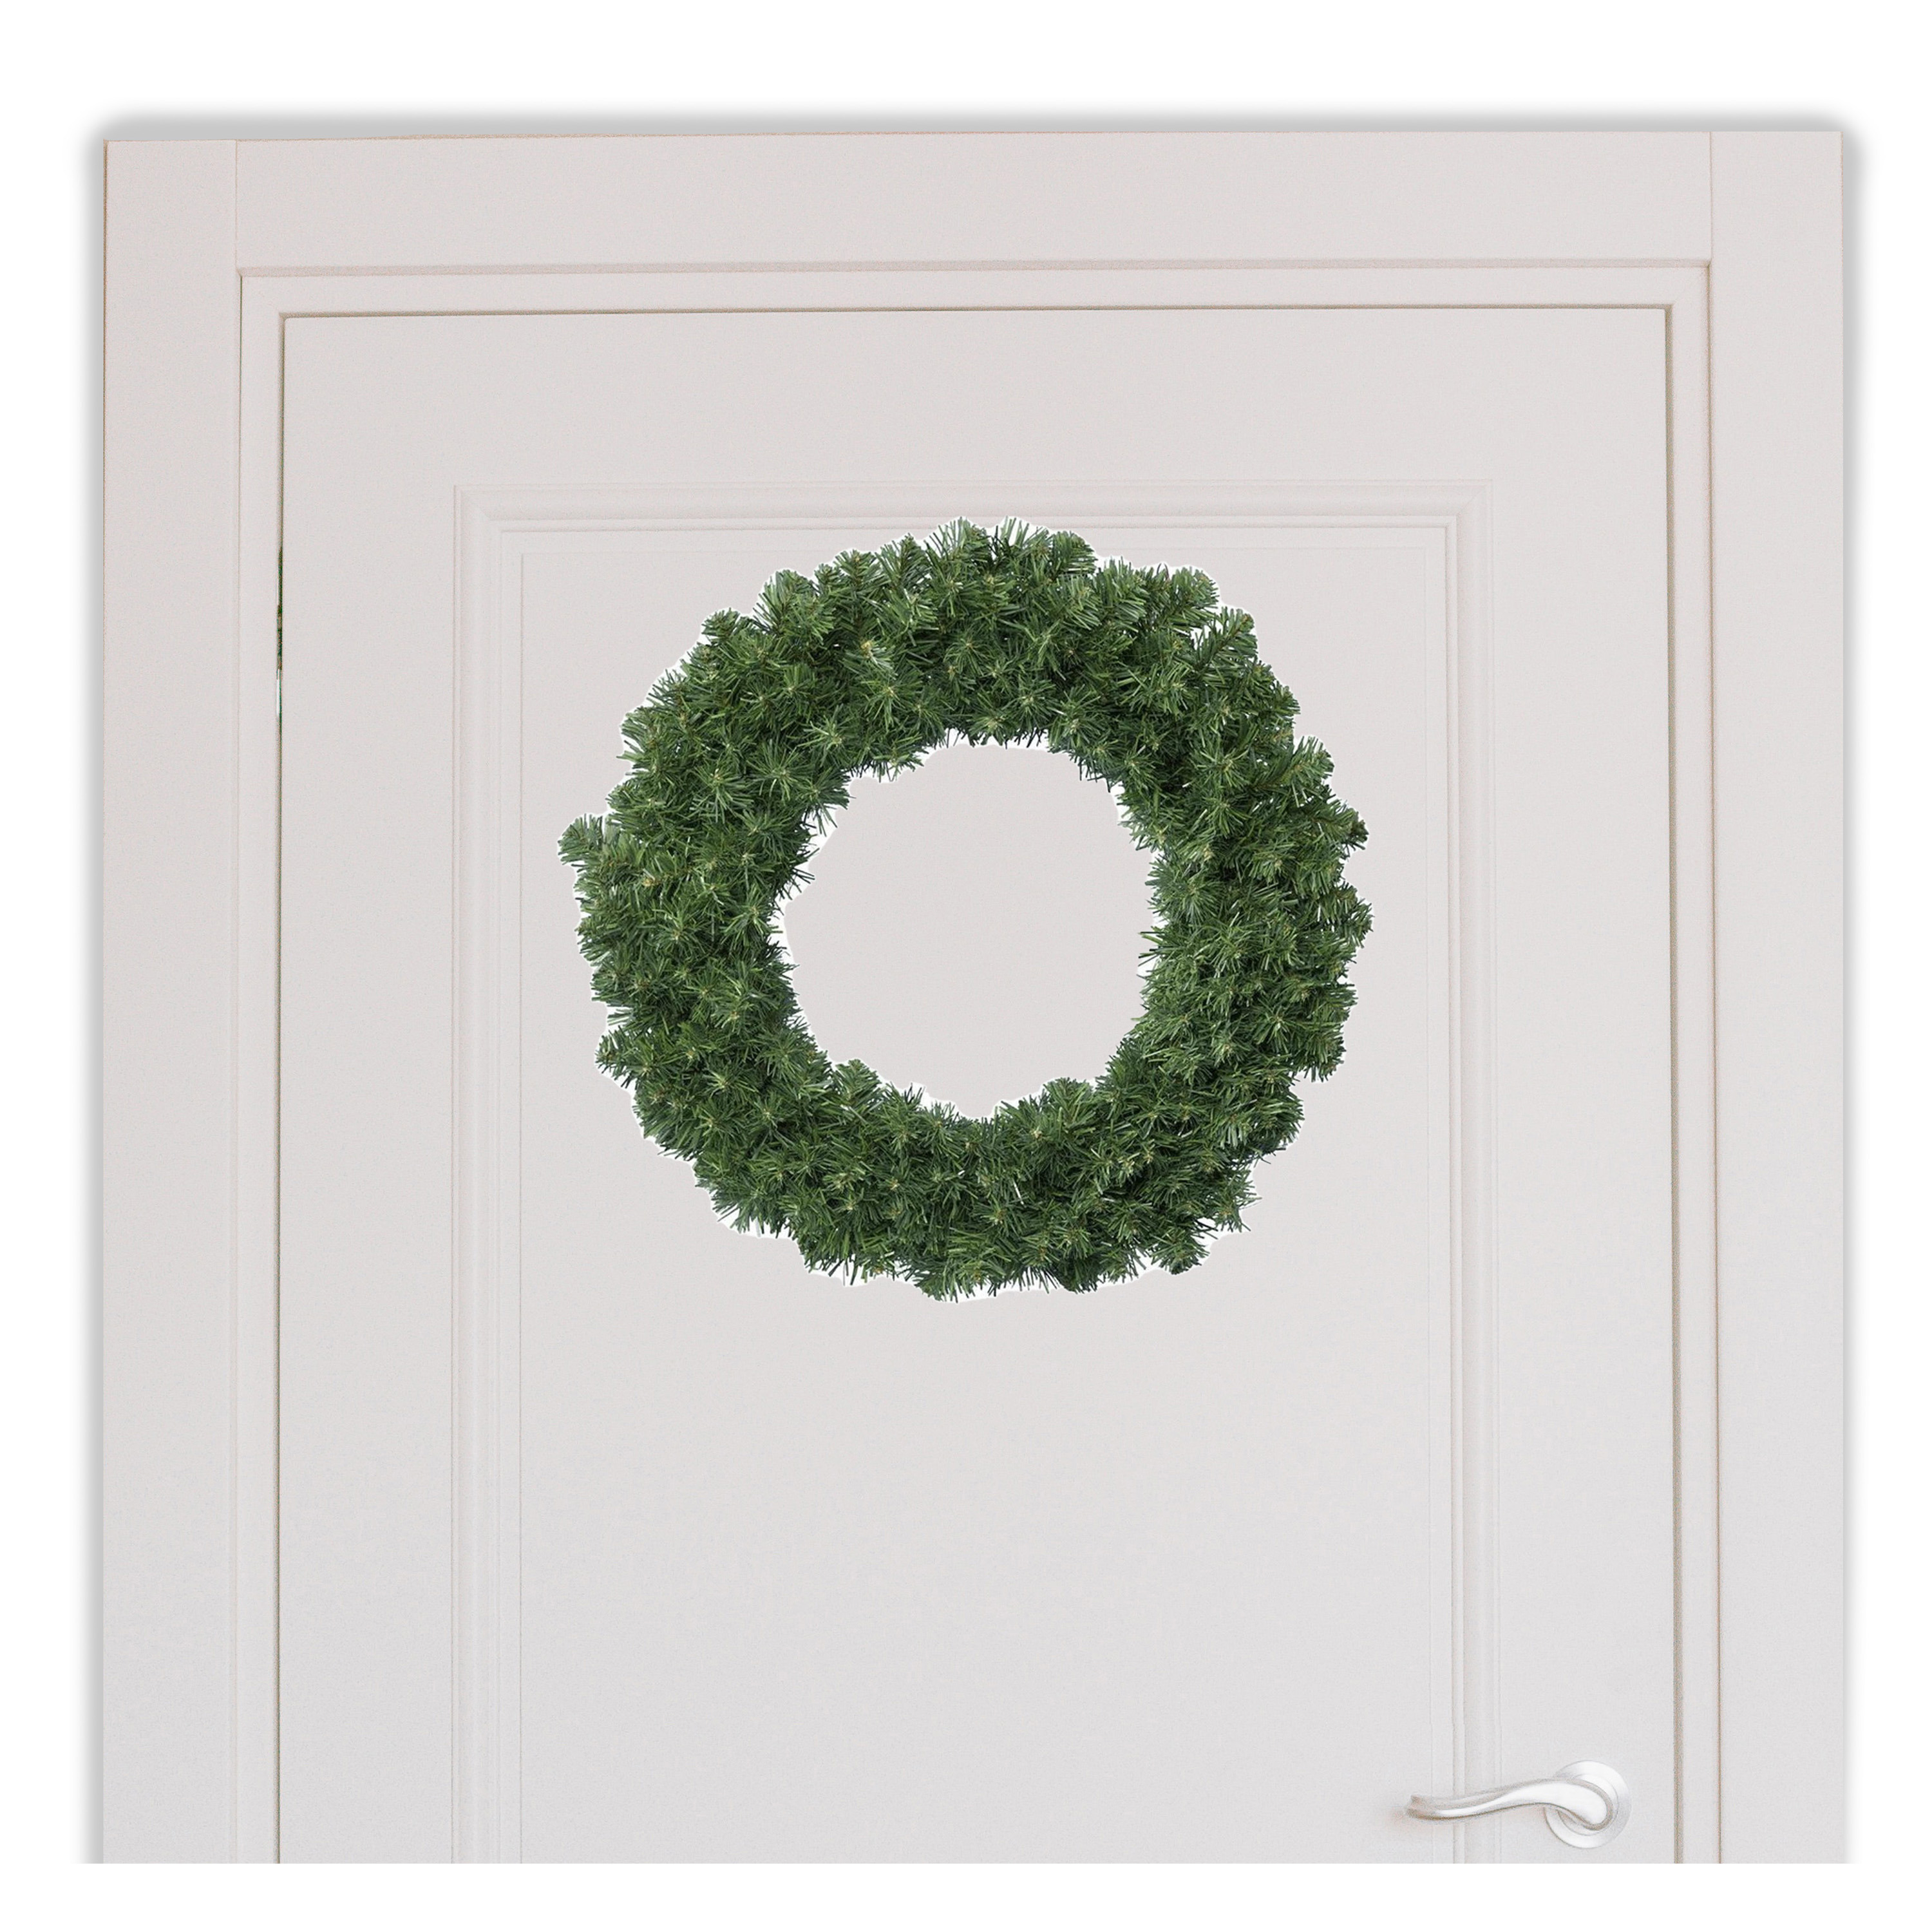 Voordelige groene deurkransen kerstkransen 50 cm